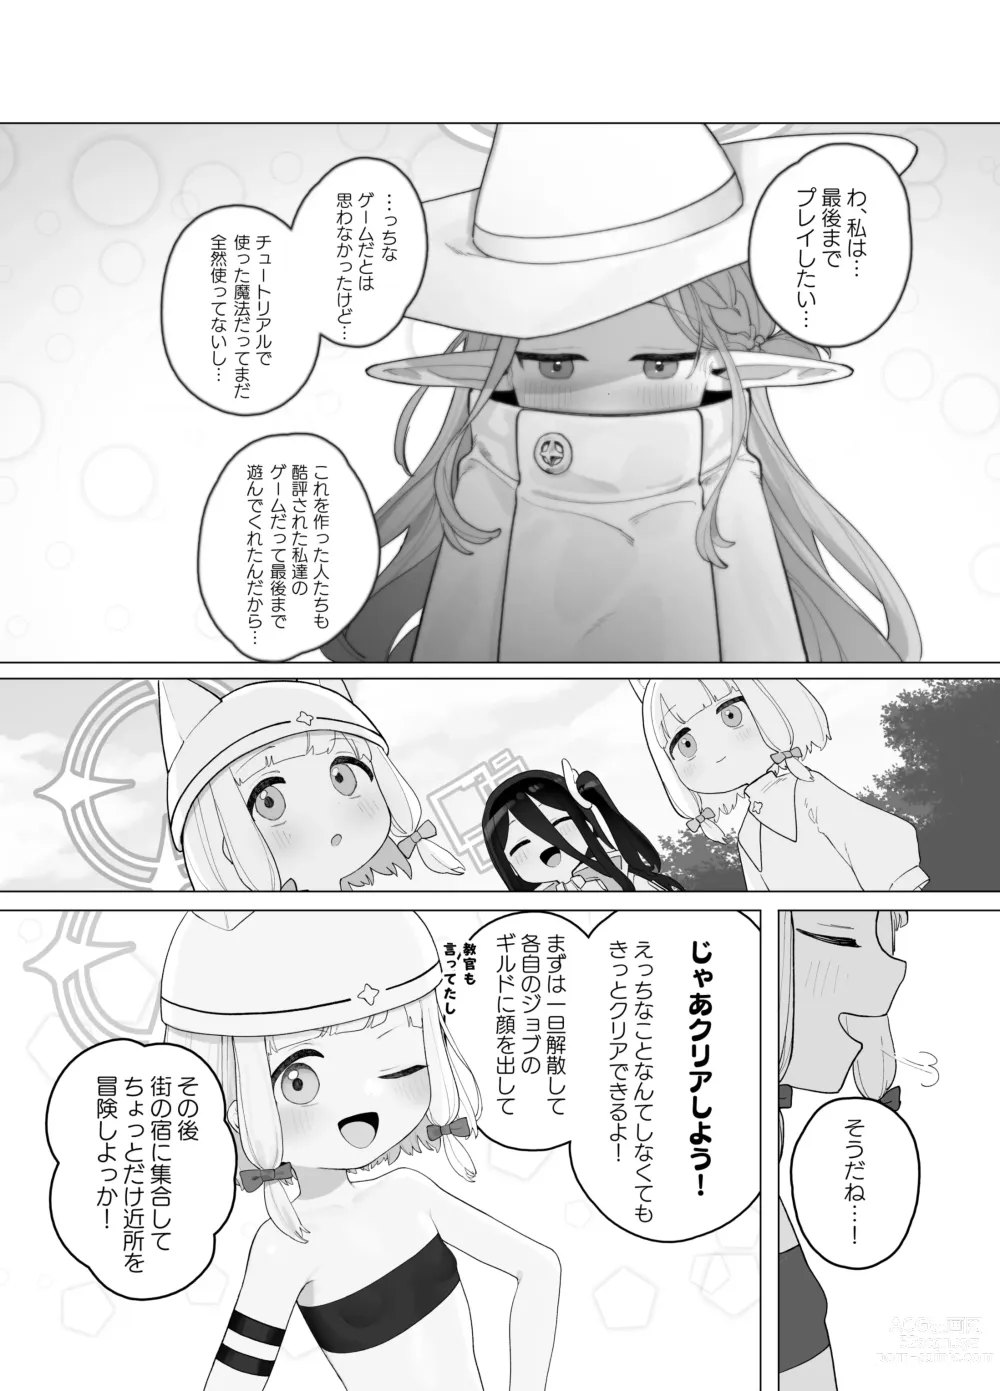 Page 21 of doujinshi Konna Game da nante Kii tenai!